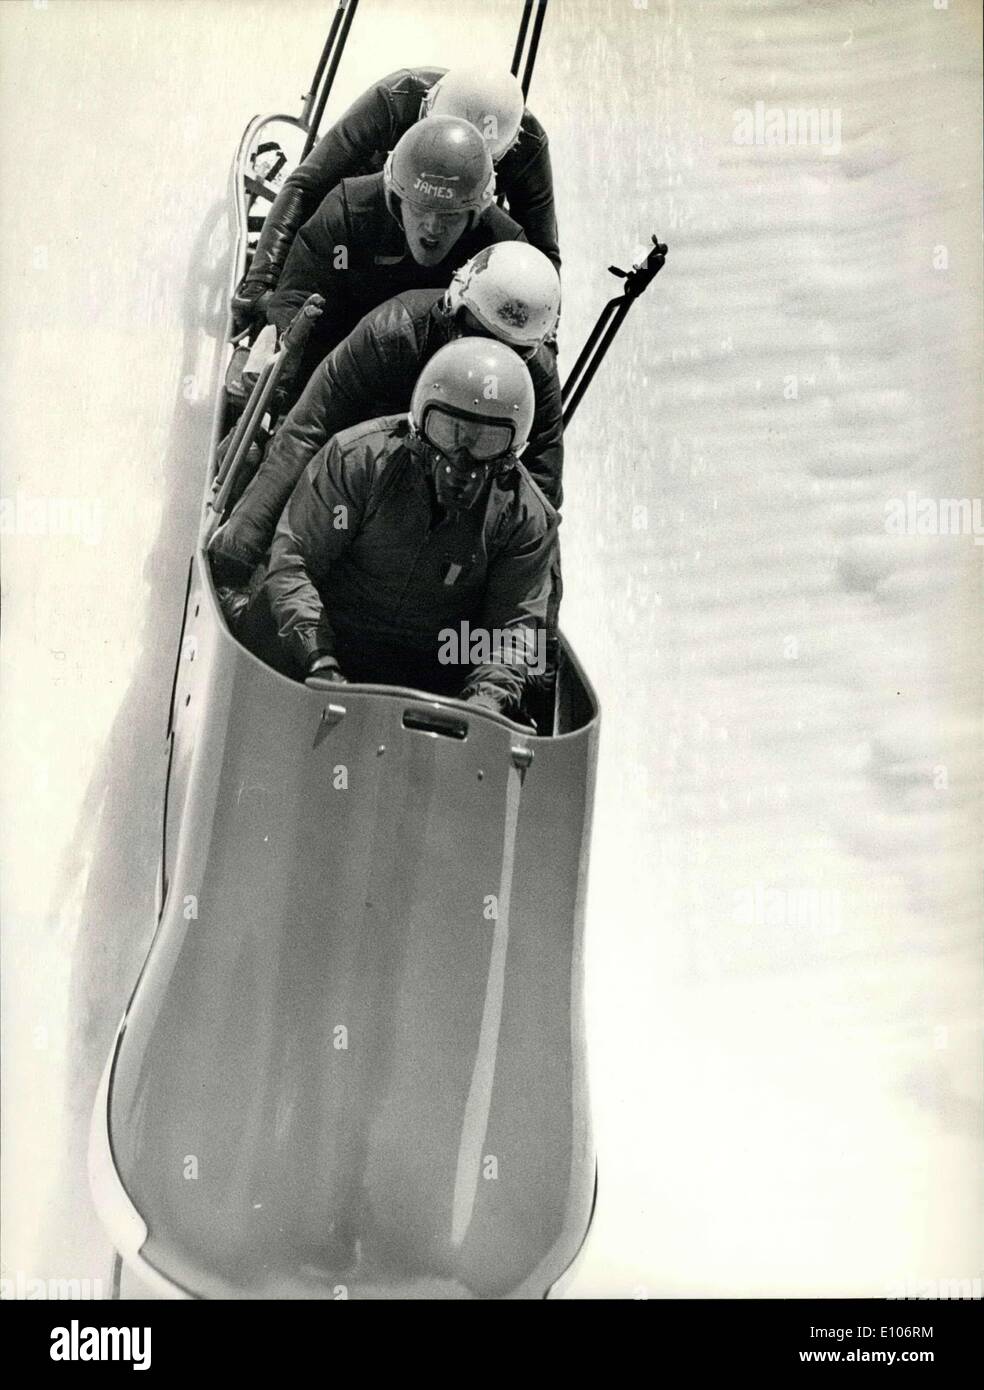 Febbraio 01, 1970 - Italia campione del mondo nelle gare di bob. Worldchampionship in bob a St-Moritz (Svizzera): il team italiano con De Zordo, Zandonella, armano e de Paolis ha vinto il titolo. Foto Stock